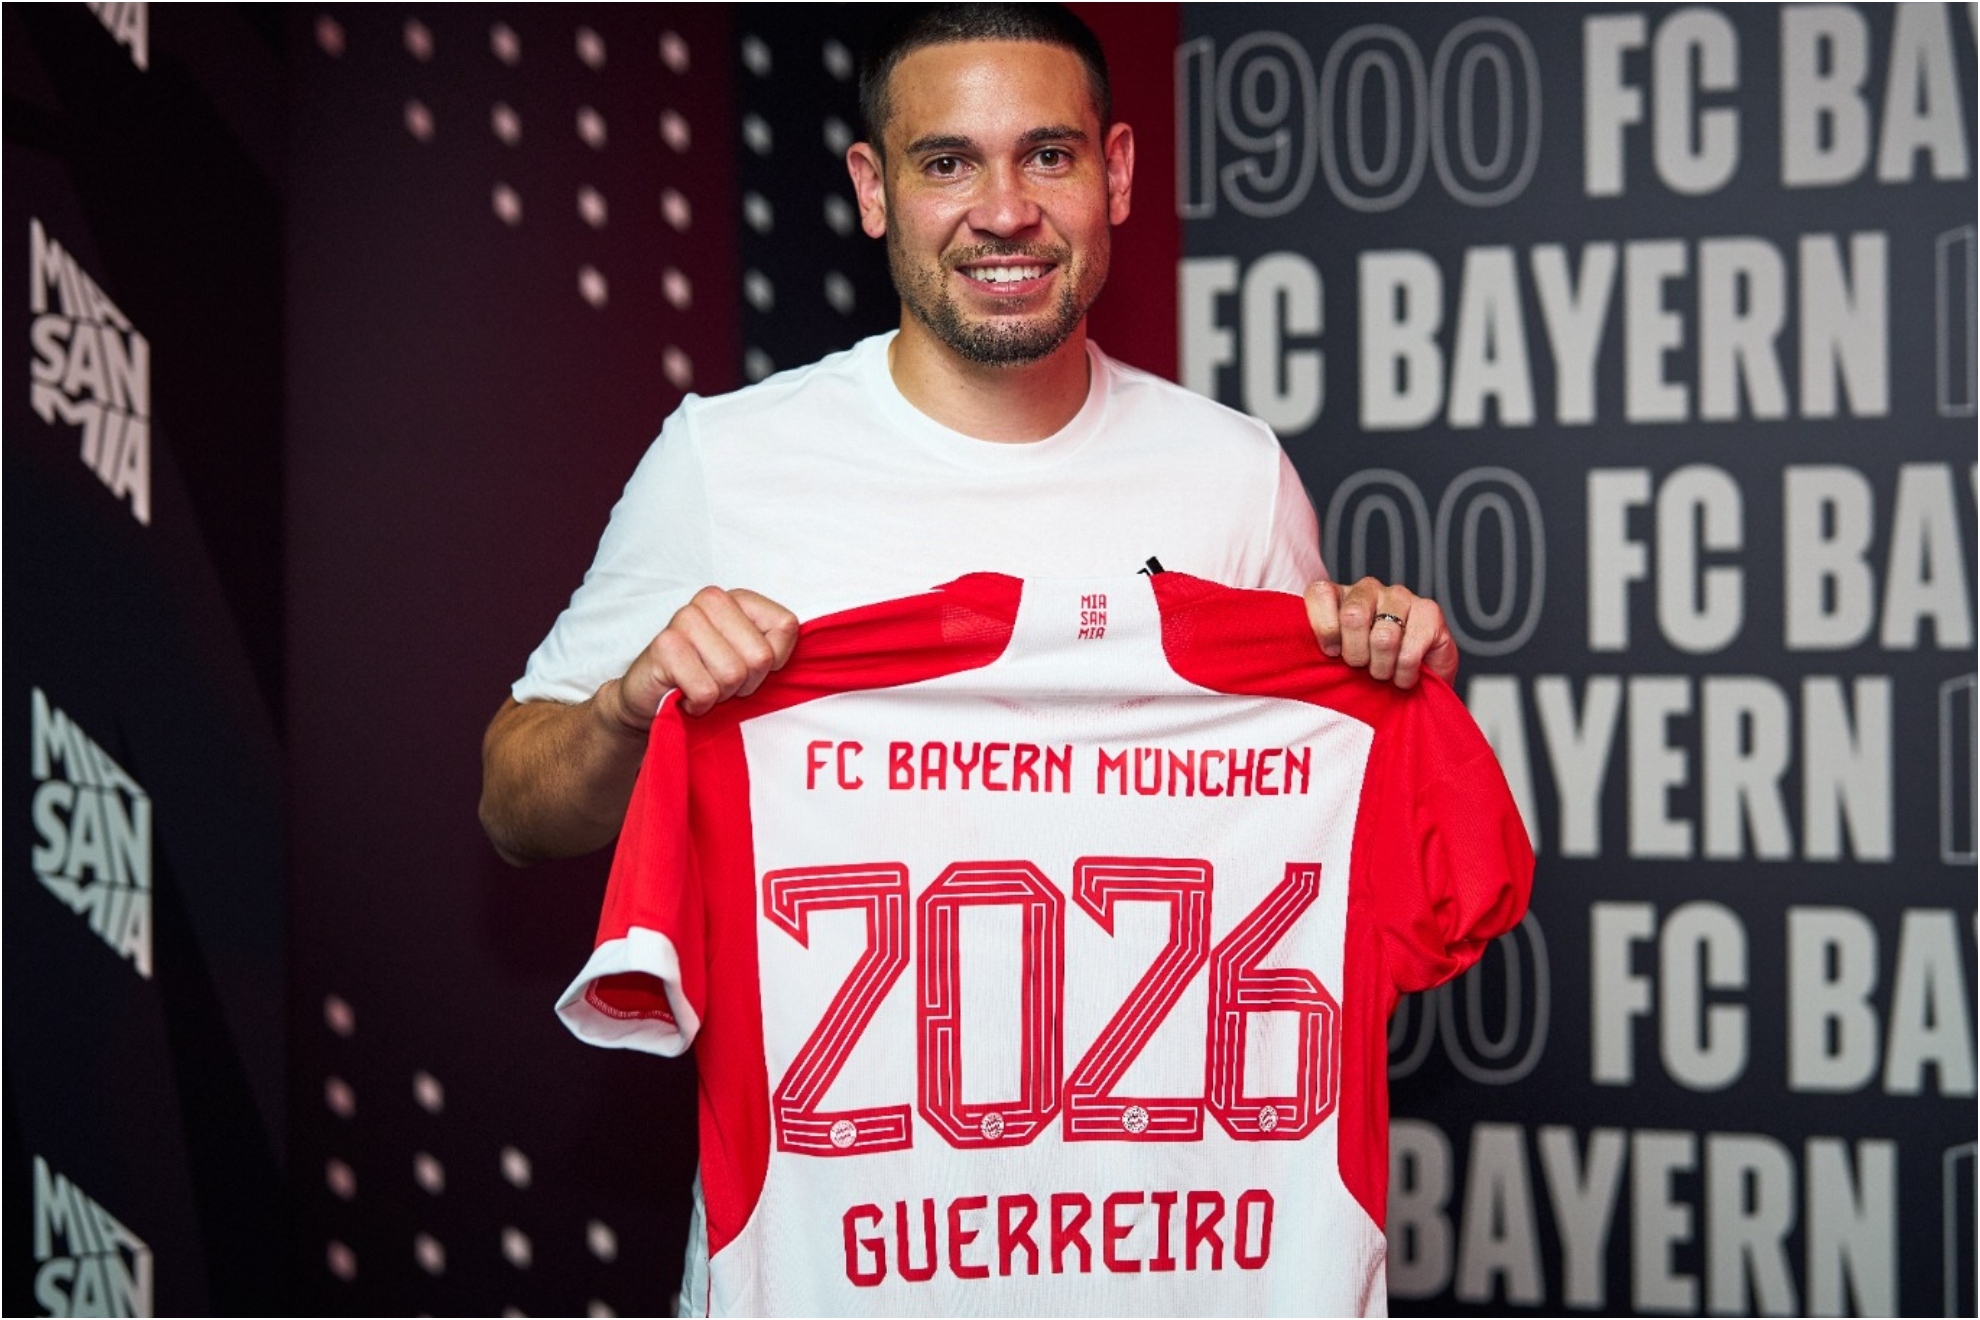 Guerreiro posa con la camiseta del Bayern en donde se ve hasta cuándo ha fichado: 2026